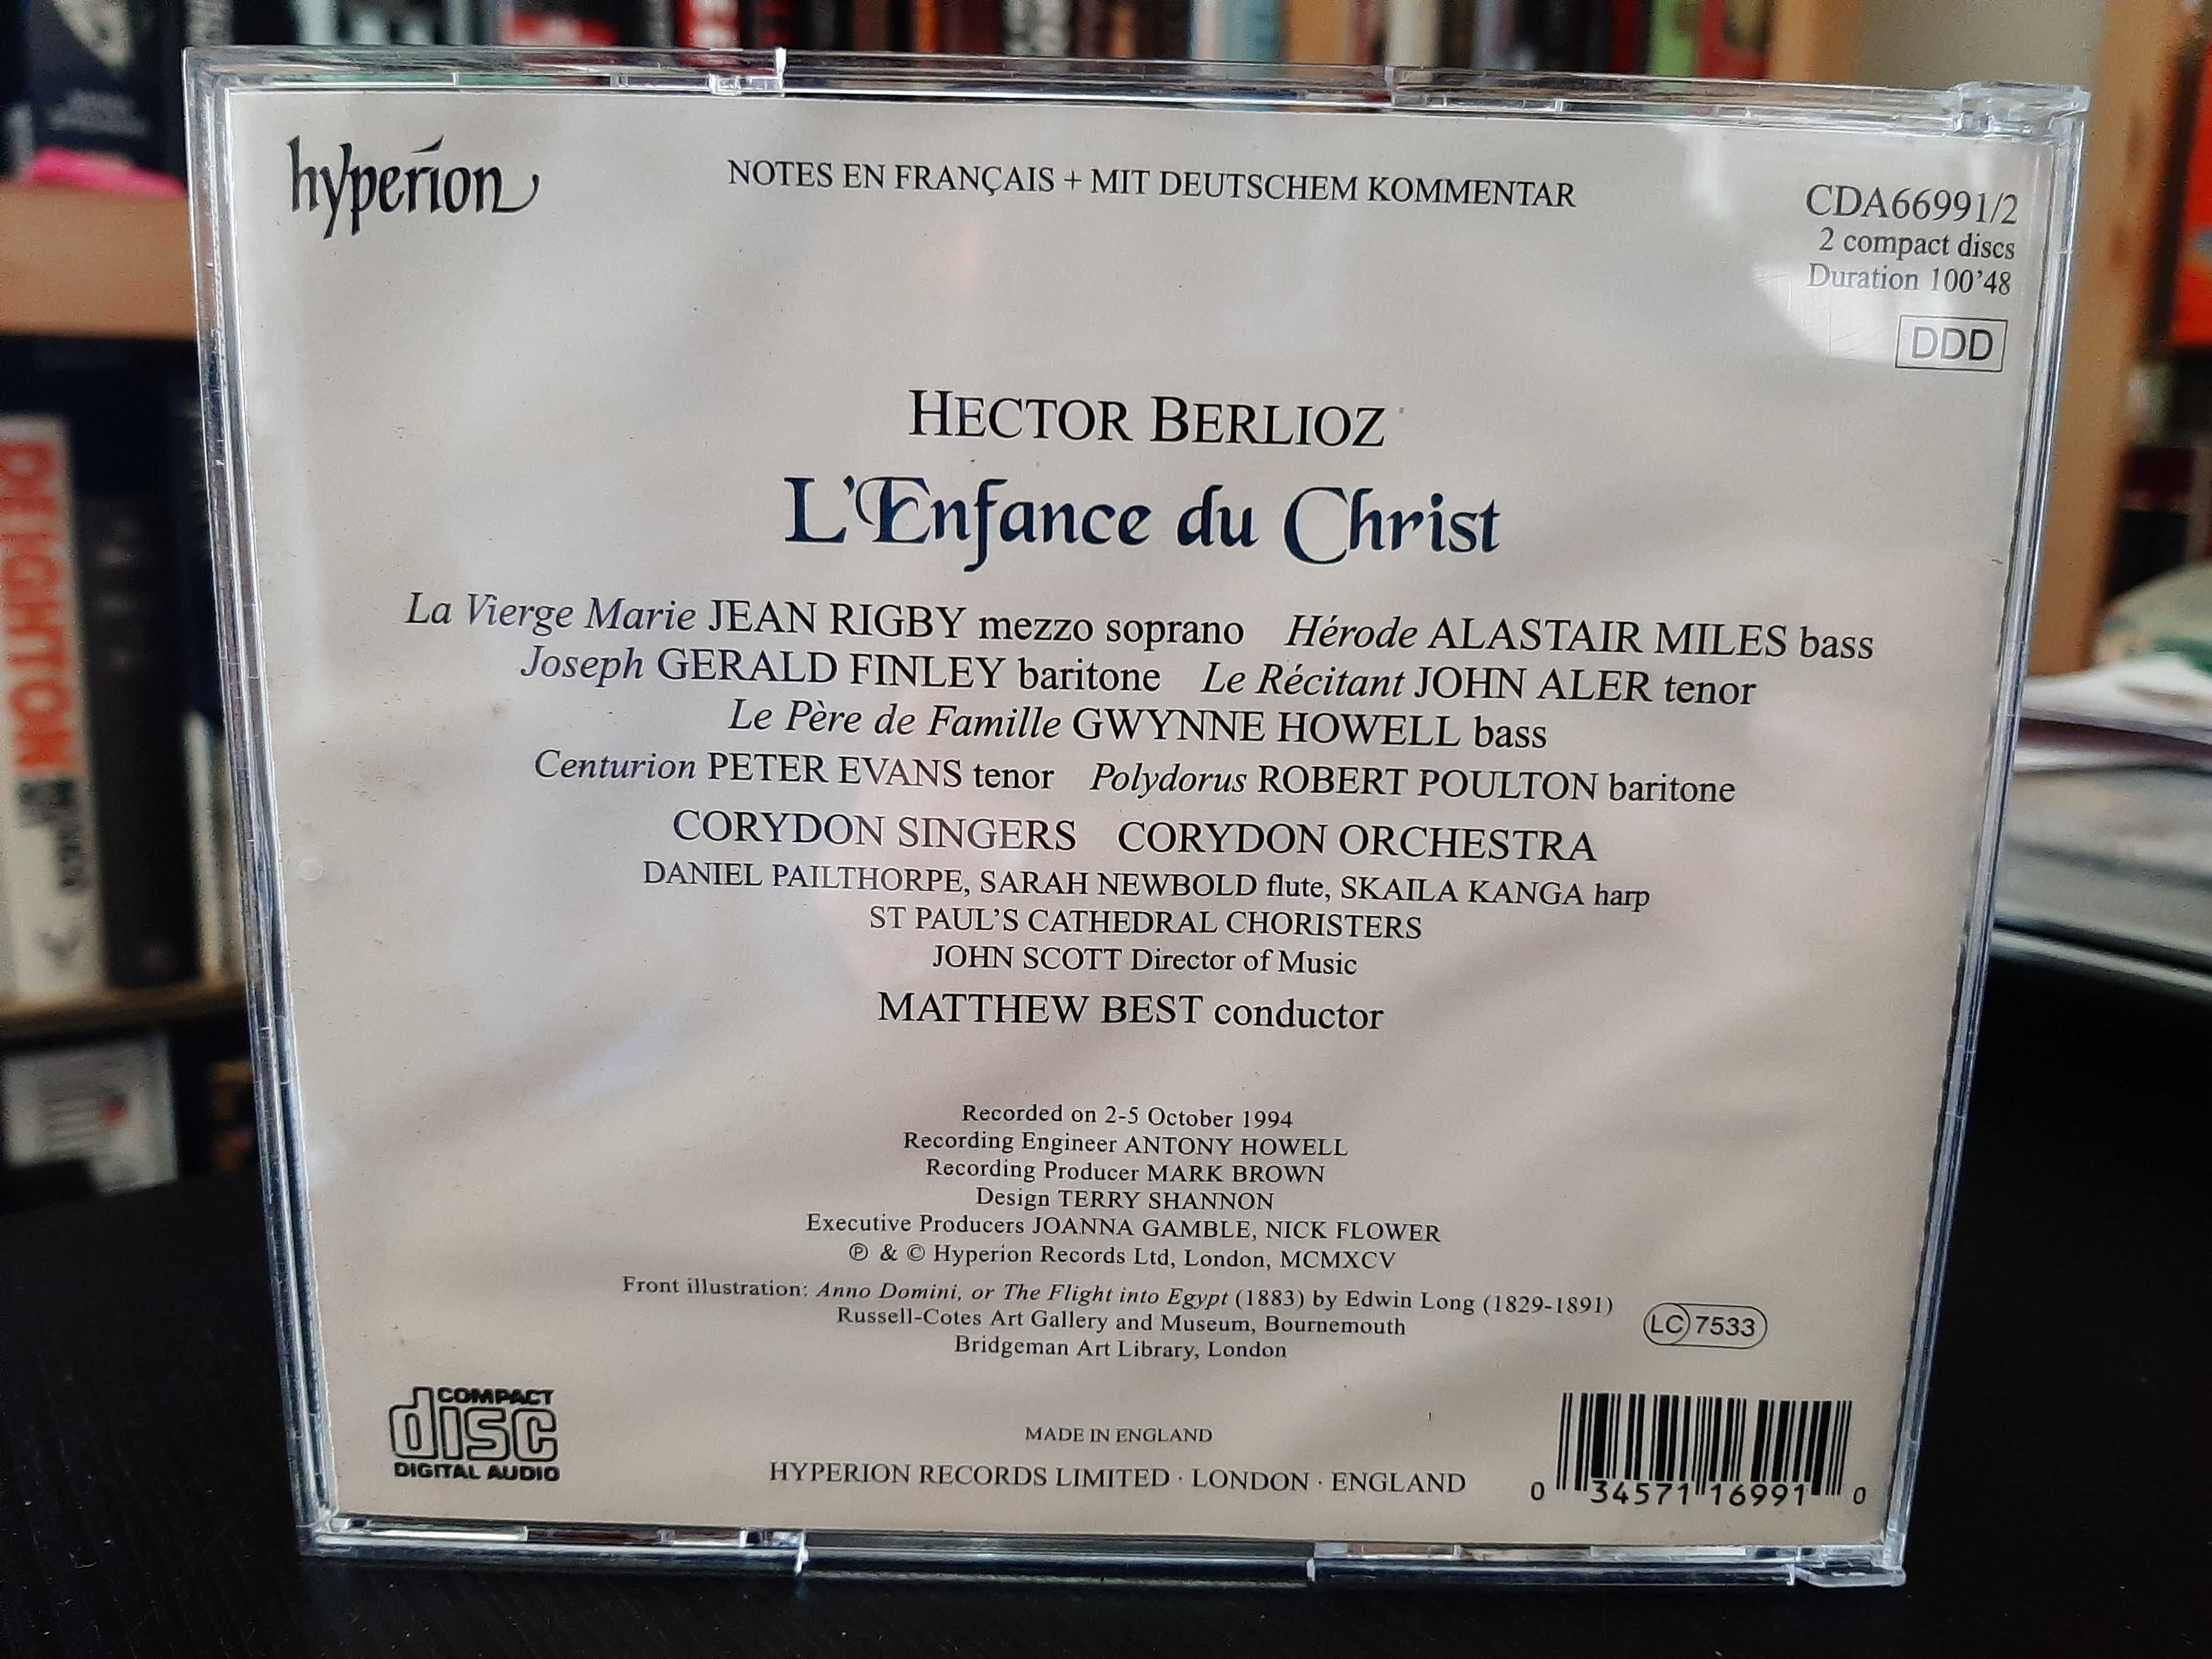 Berlioz – L'Enfance Du Christ – Corydon Orchestra, Matthew Best